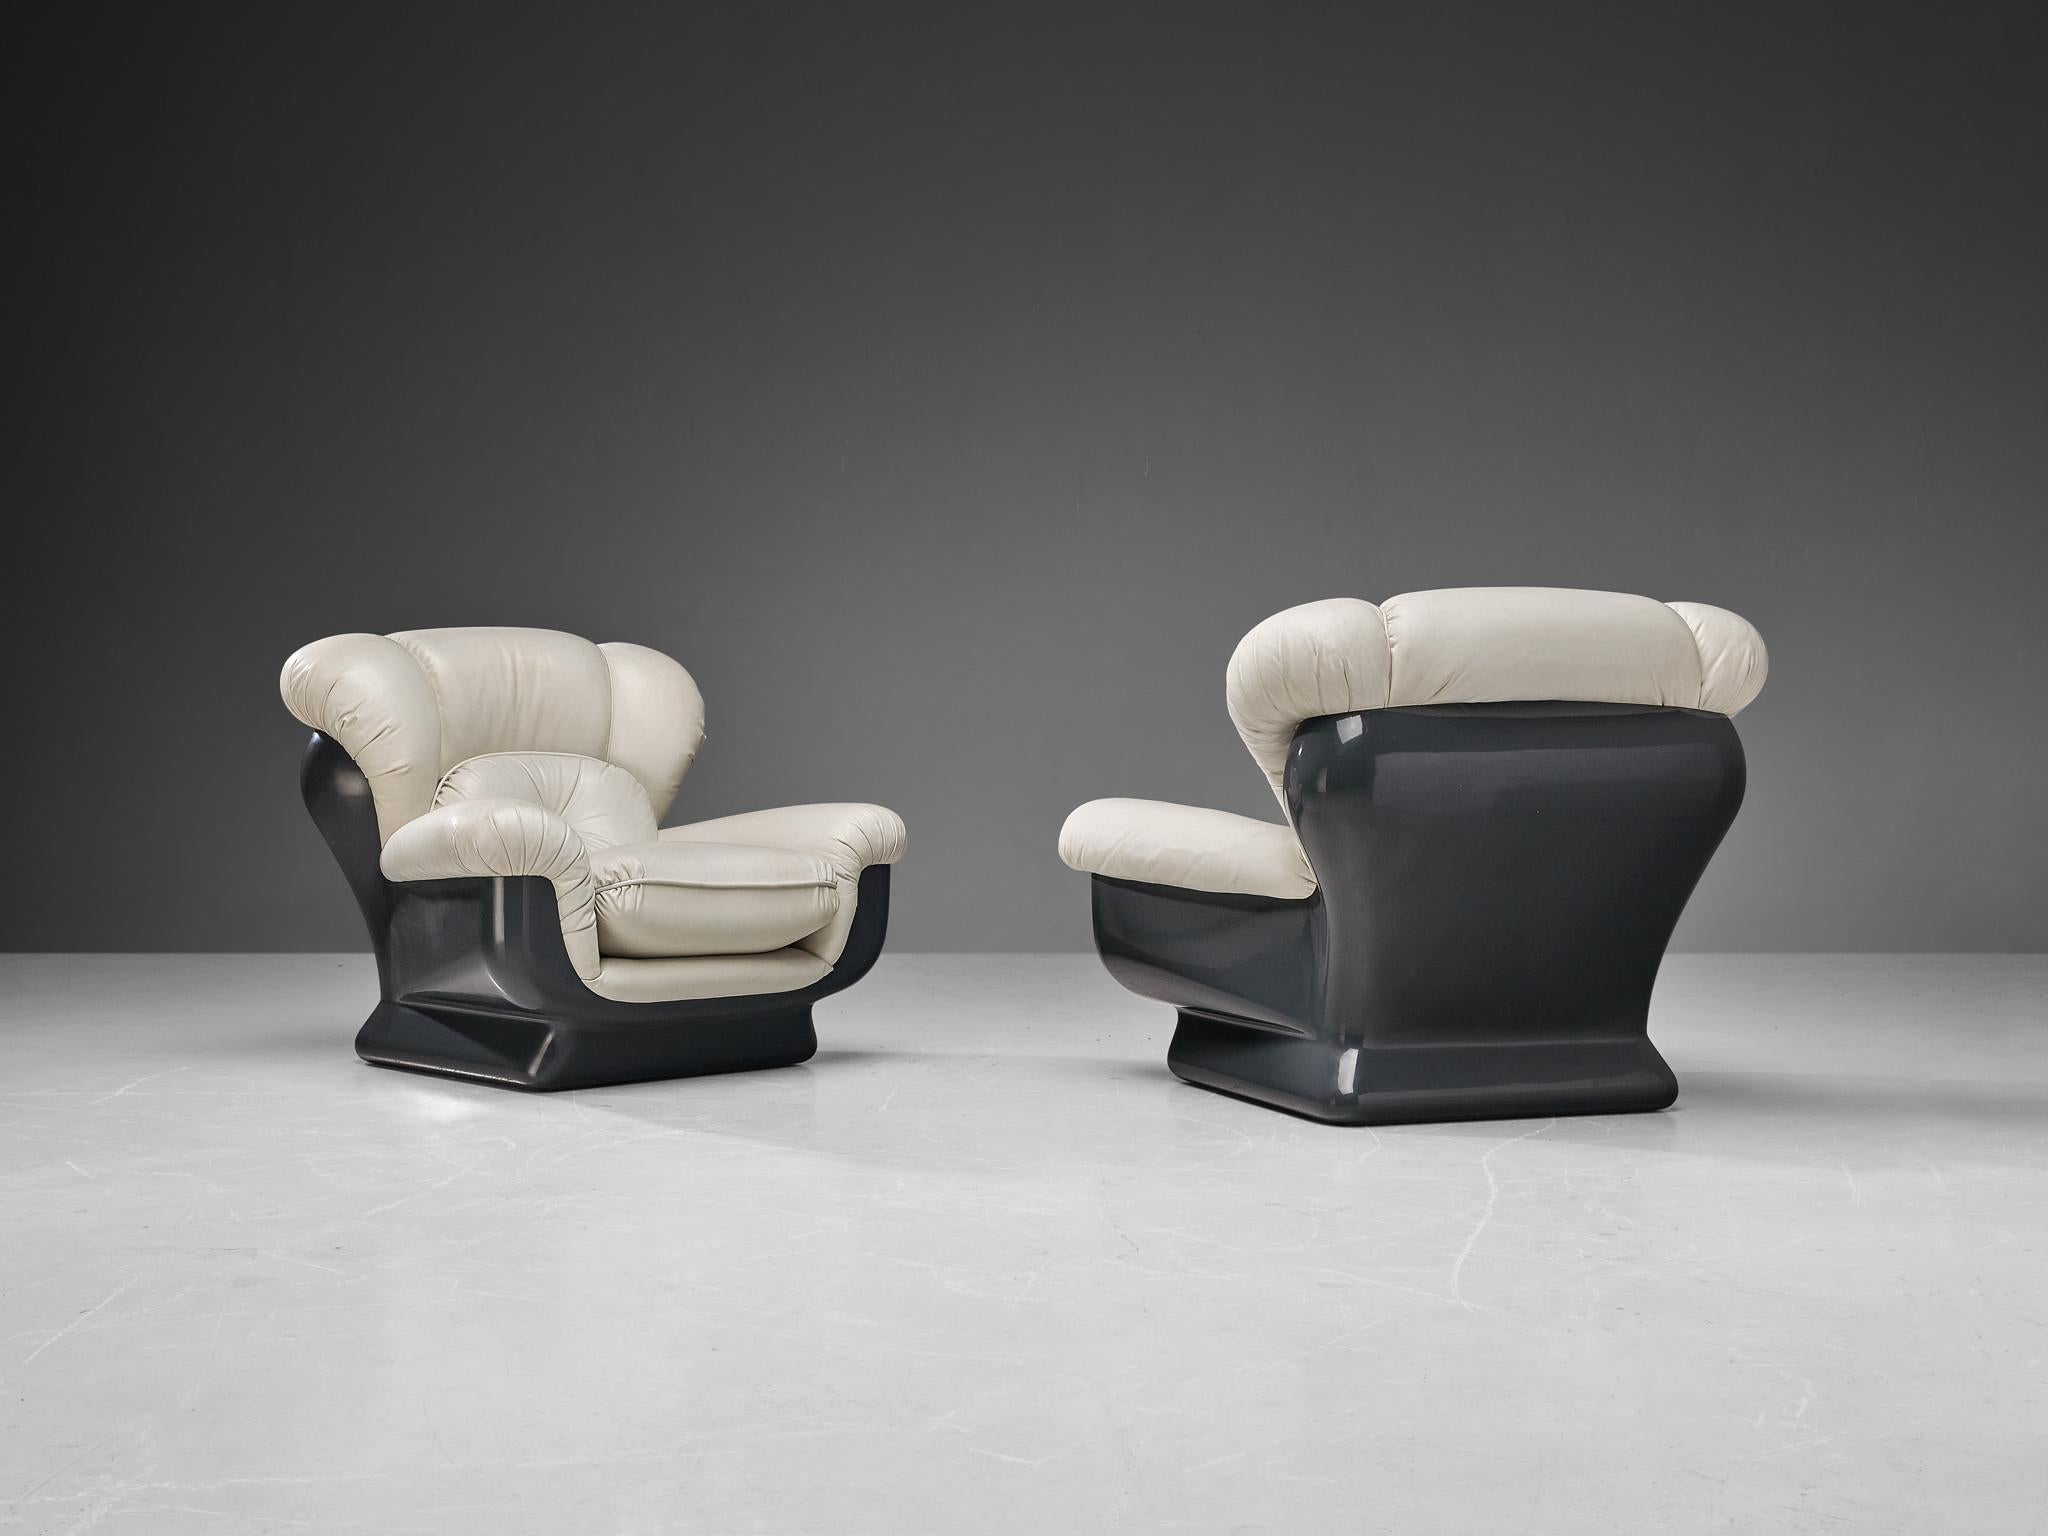 Paar Loungesessel, Fiberglas, Kunstleder, Italien, 1970er Jahre

Ein Paar sehr angenehme sperrige Sessel aus Kunstleder. Diese Stühle sind die ideale Lösung für alle, die Komfort suchen. Die große Polsterung gibt dem Sitzenden das Gefühl, in einen